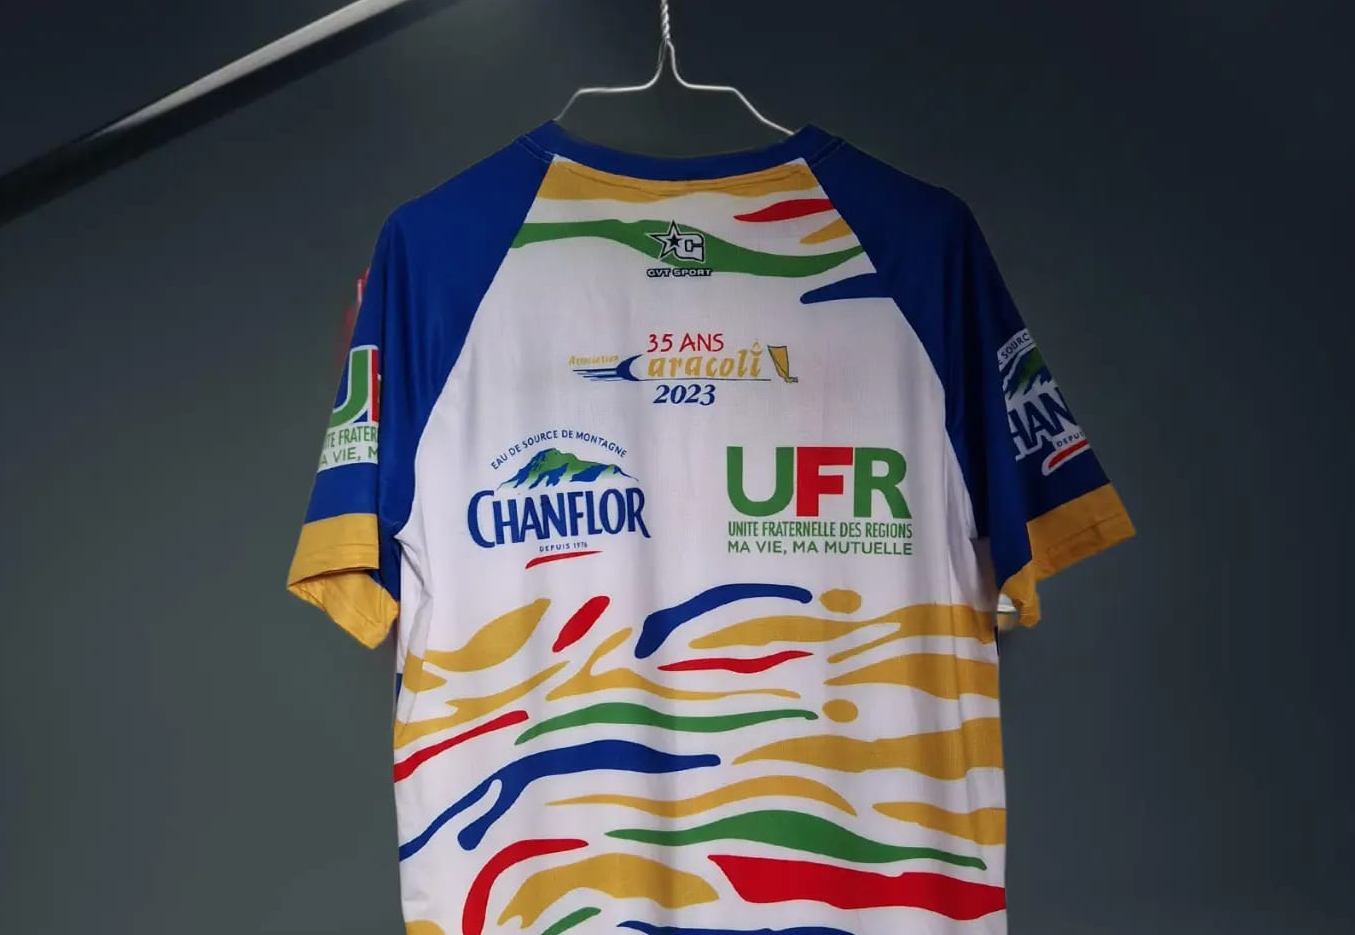     Tour des Yoles : UFR Chanflor met en vente les maillots de ses yoleurs

